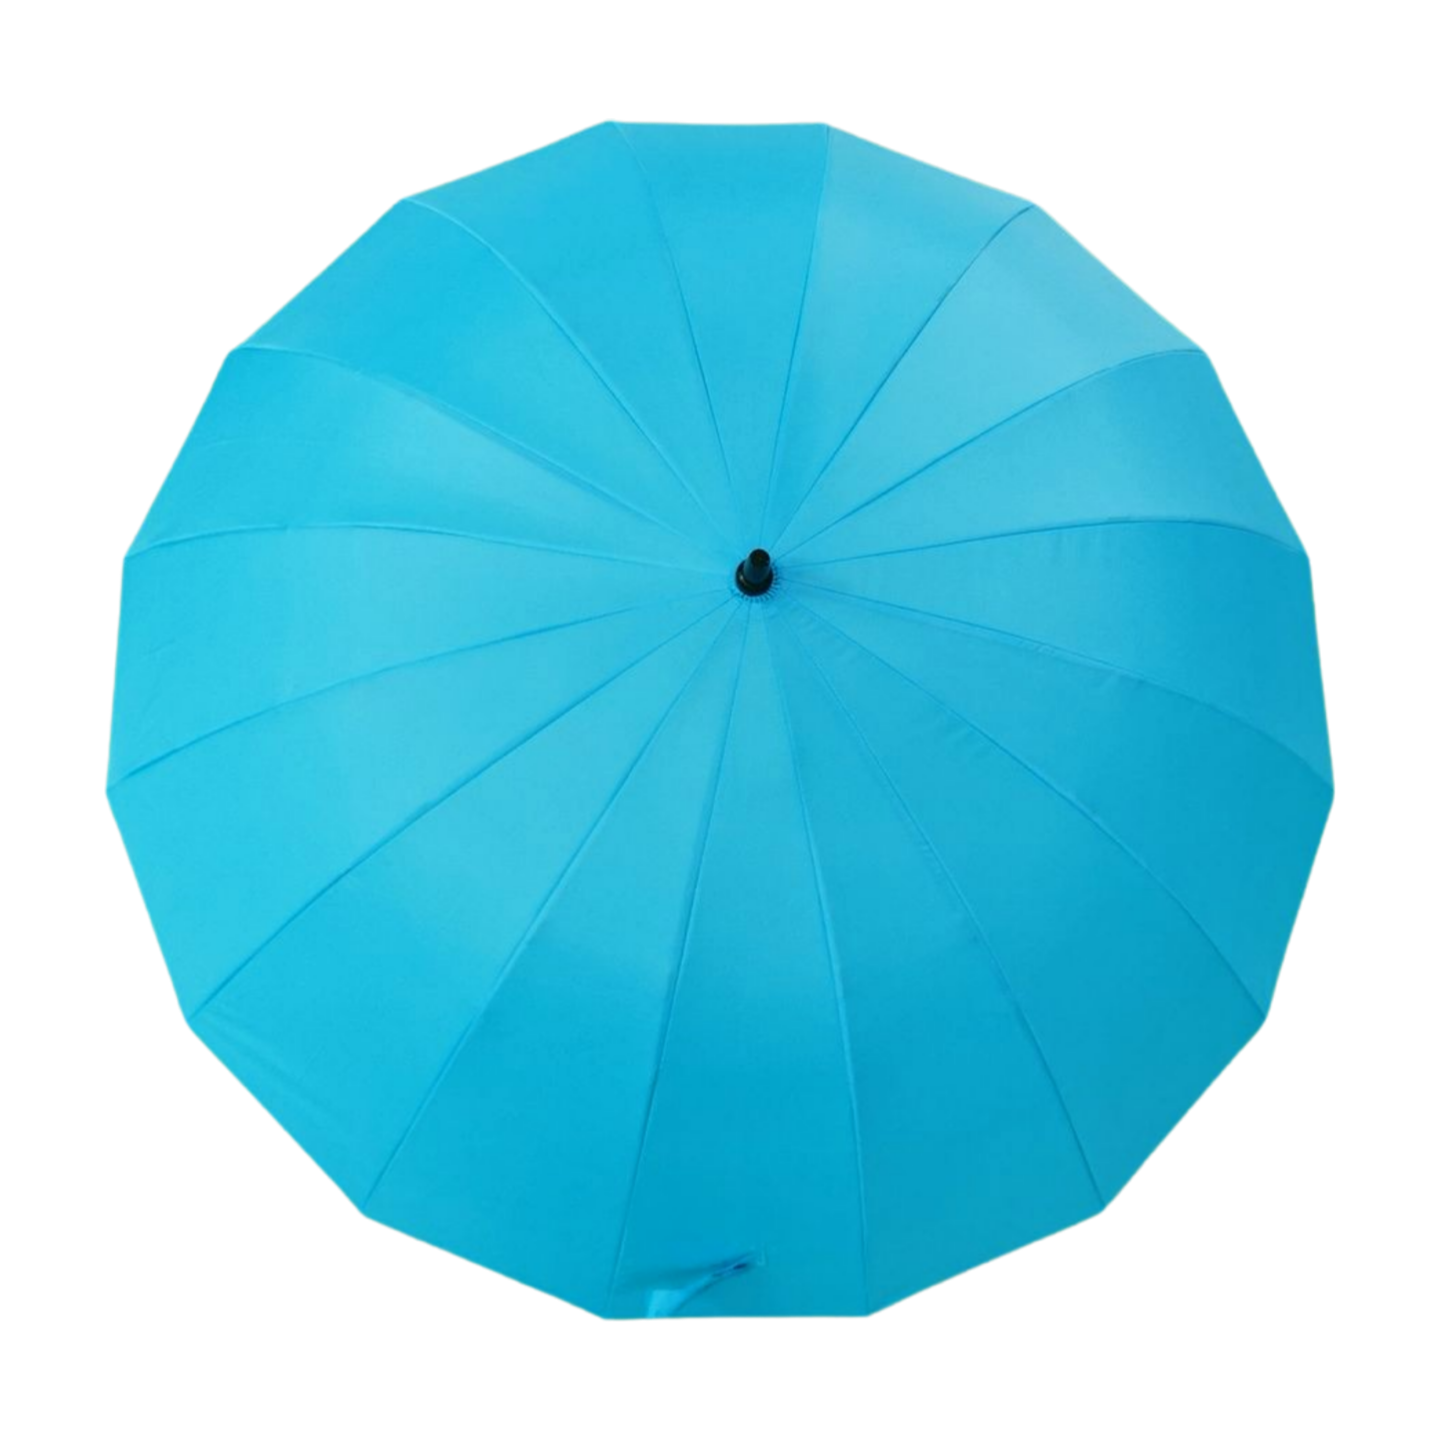 https://www.hodaumbrella.com/blossom-colorf…-golf-umbrella-product/